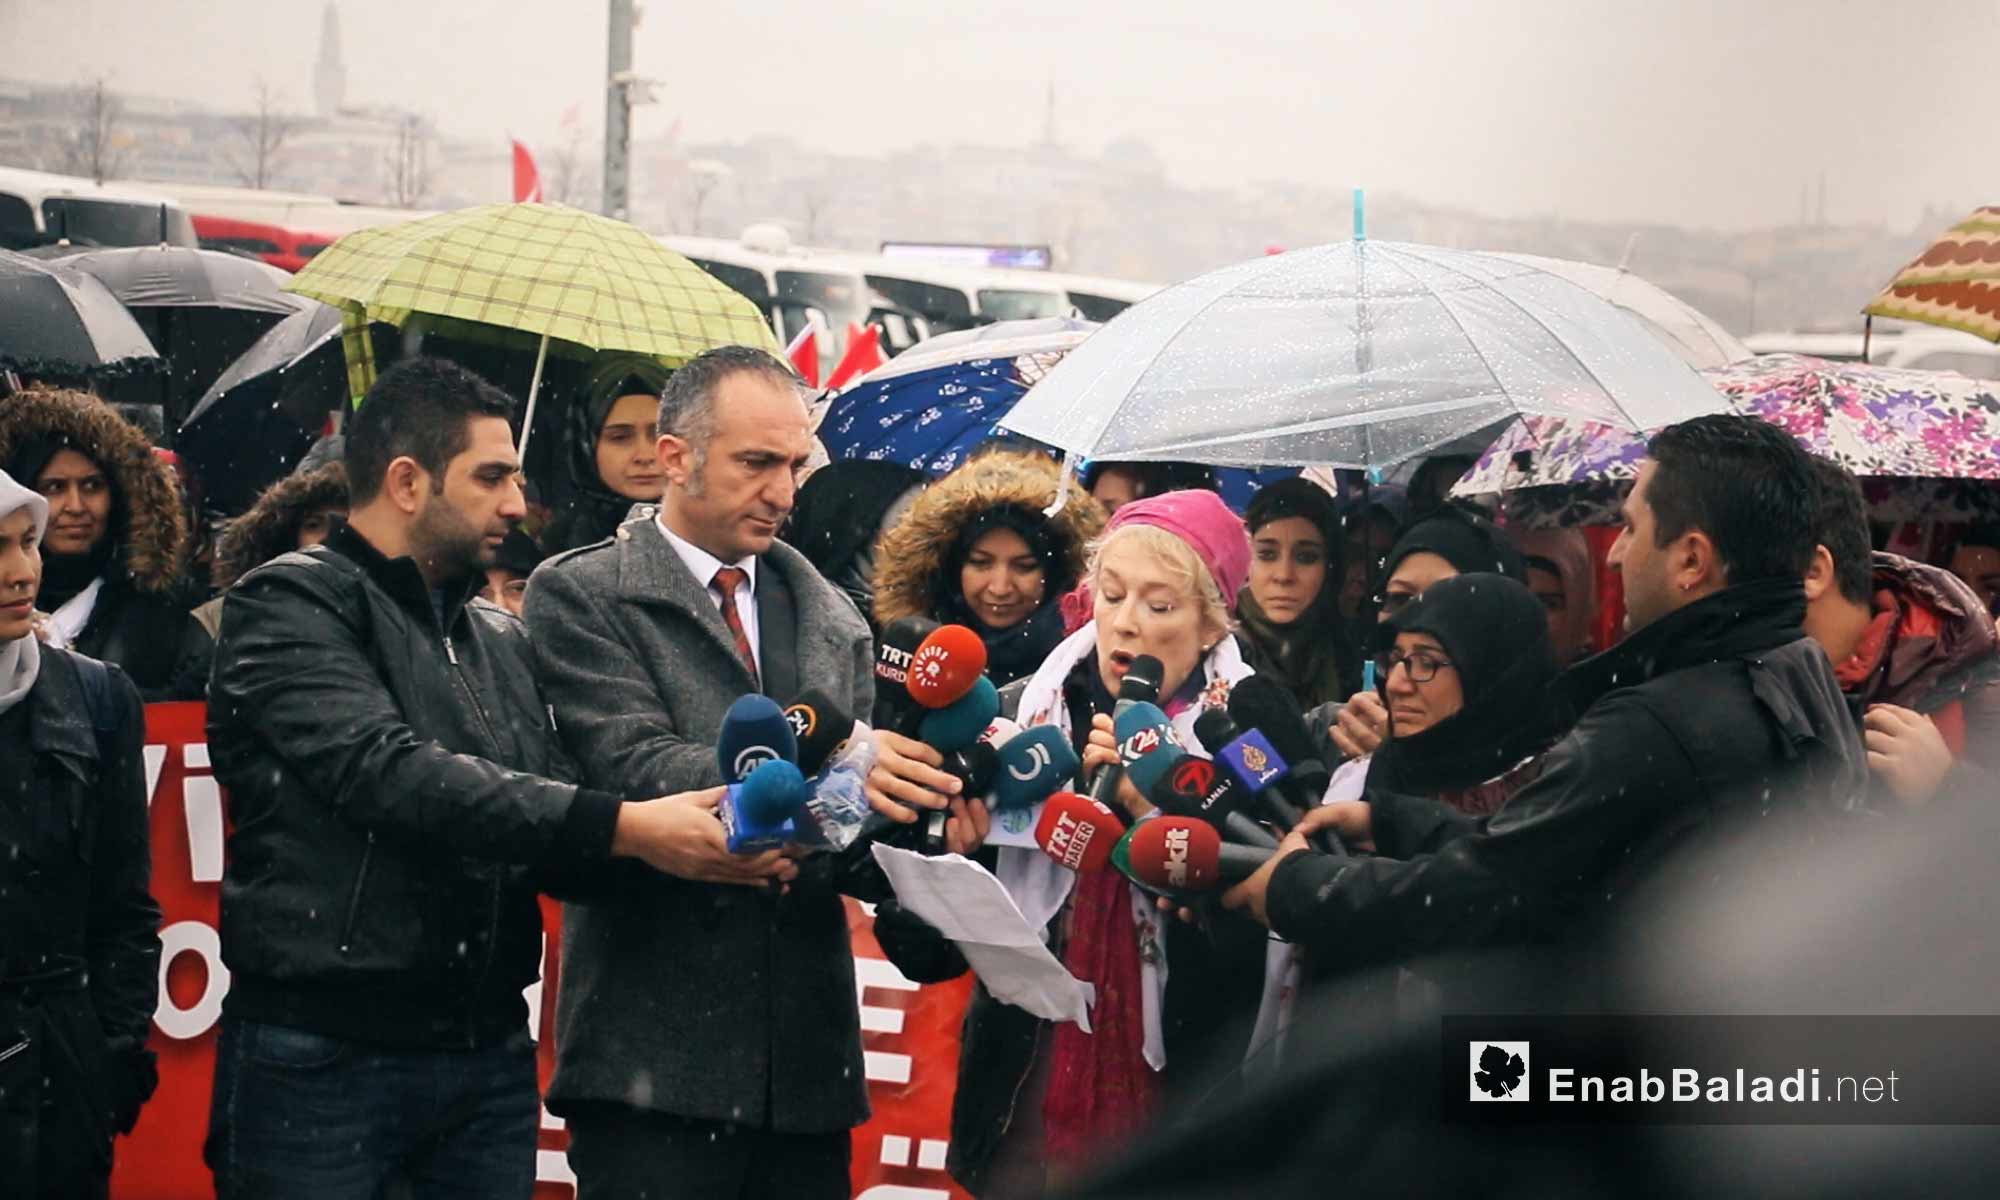 مؤتمر صحفي قبل انطلاق قافلة "َالضمير" لدعم المعتقلات السوريات من اسطنبول - 6 آذار 2018 (عنب بلدي) 